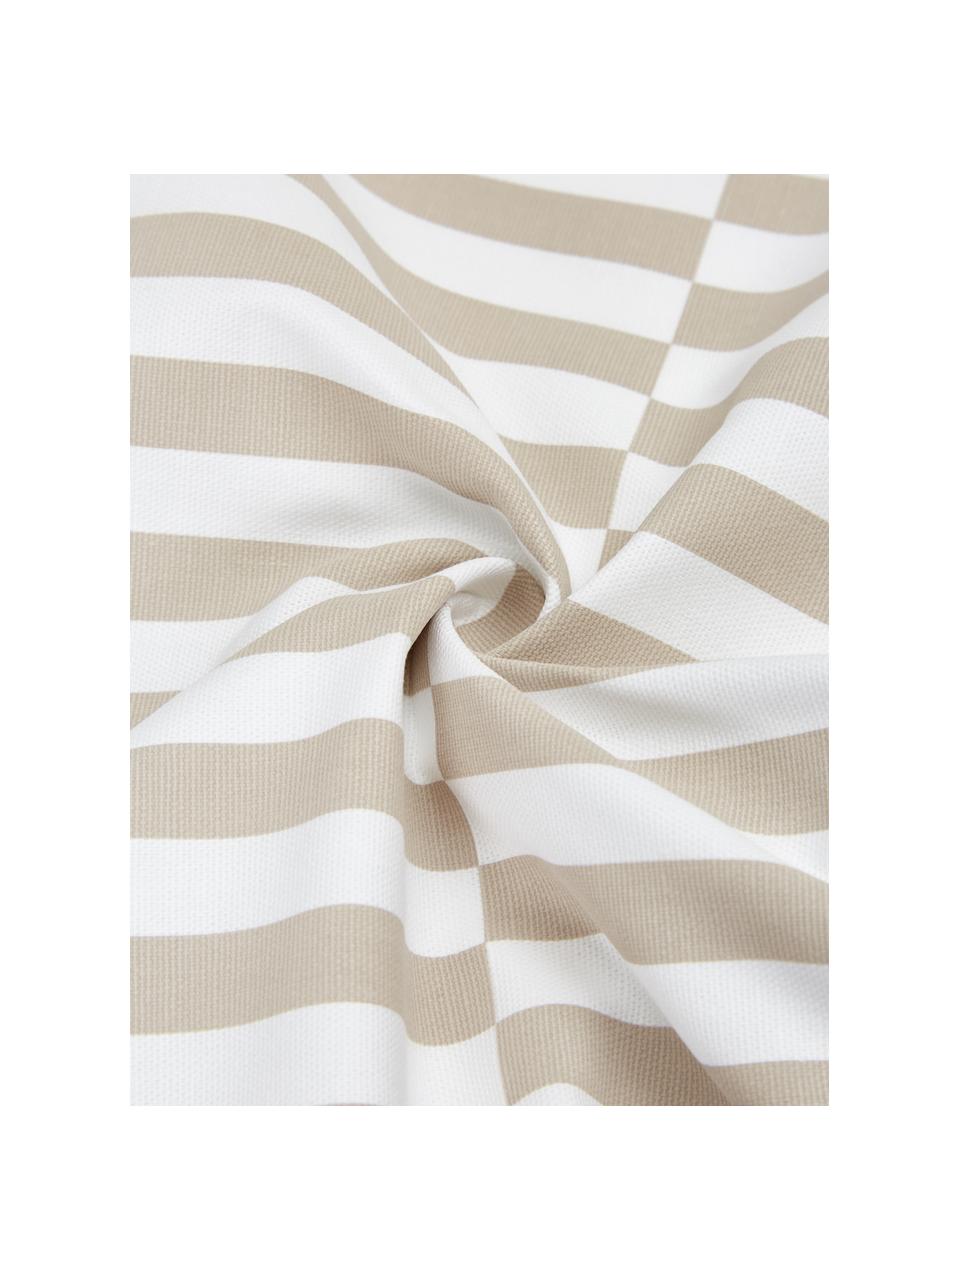 Kussenhoes Ivo taupe/wit met grafisch patroon, 100% katoen, Wit, beige, 45 x 45 cm